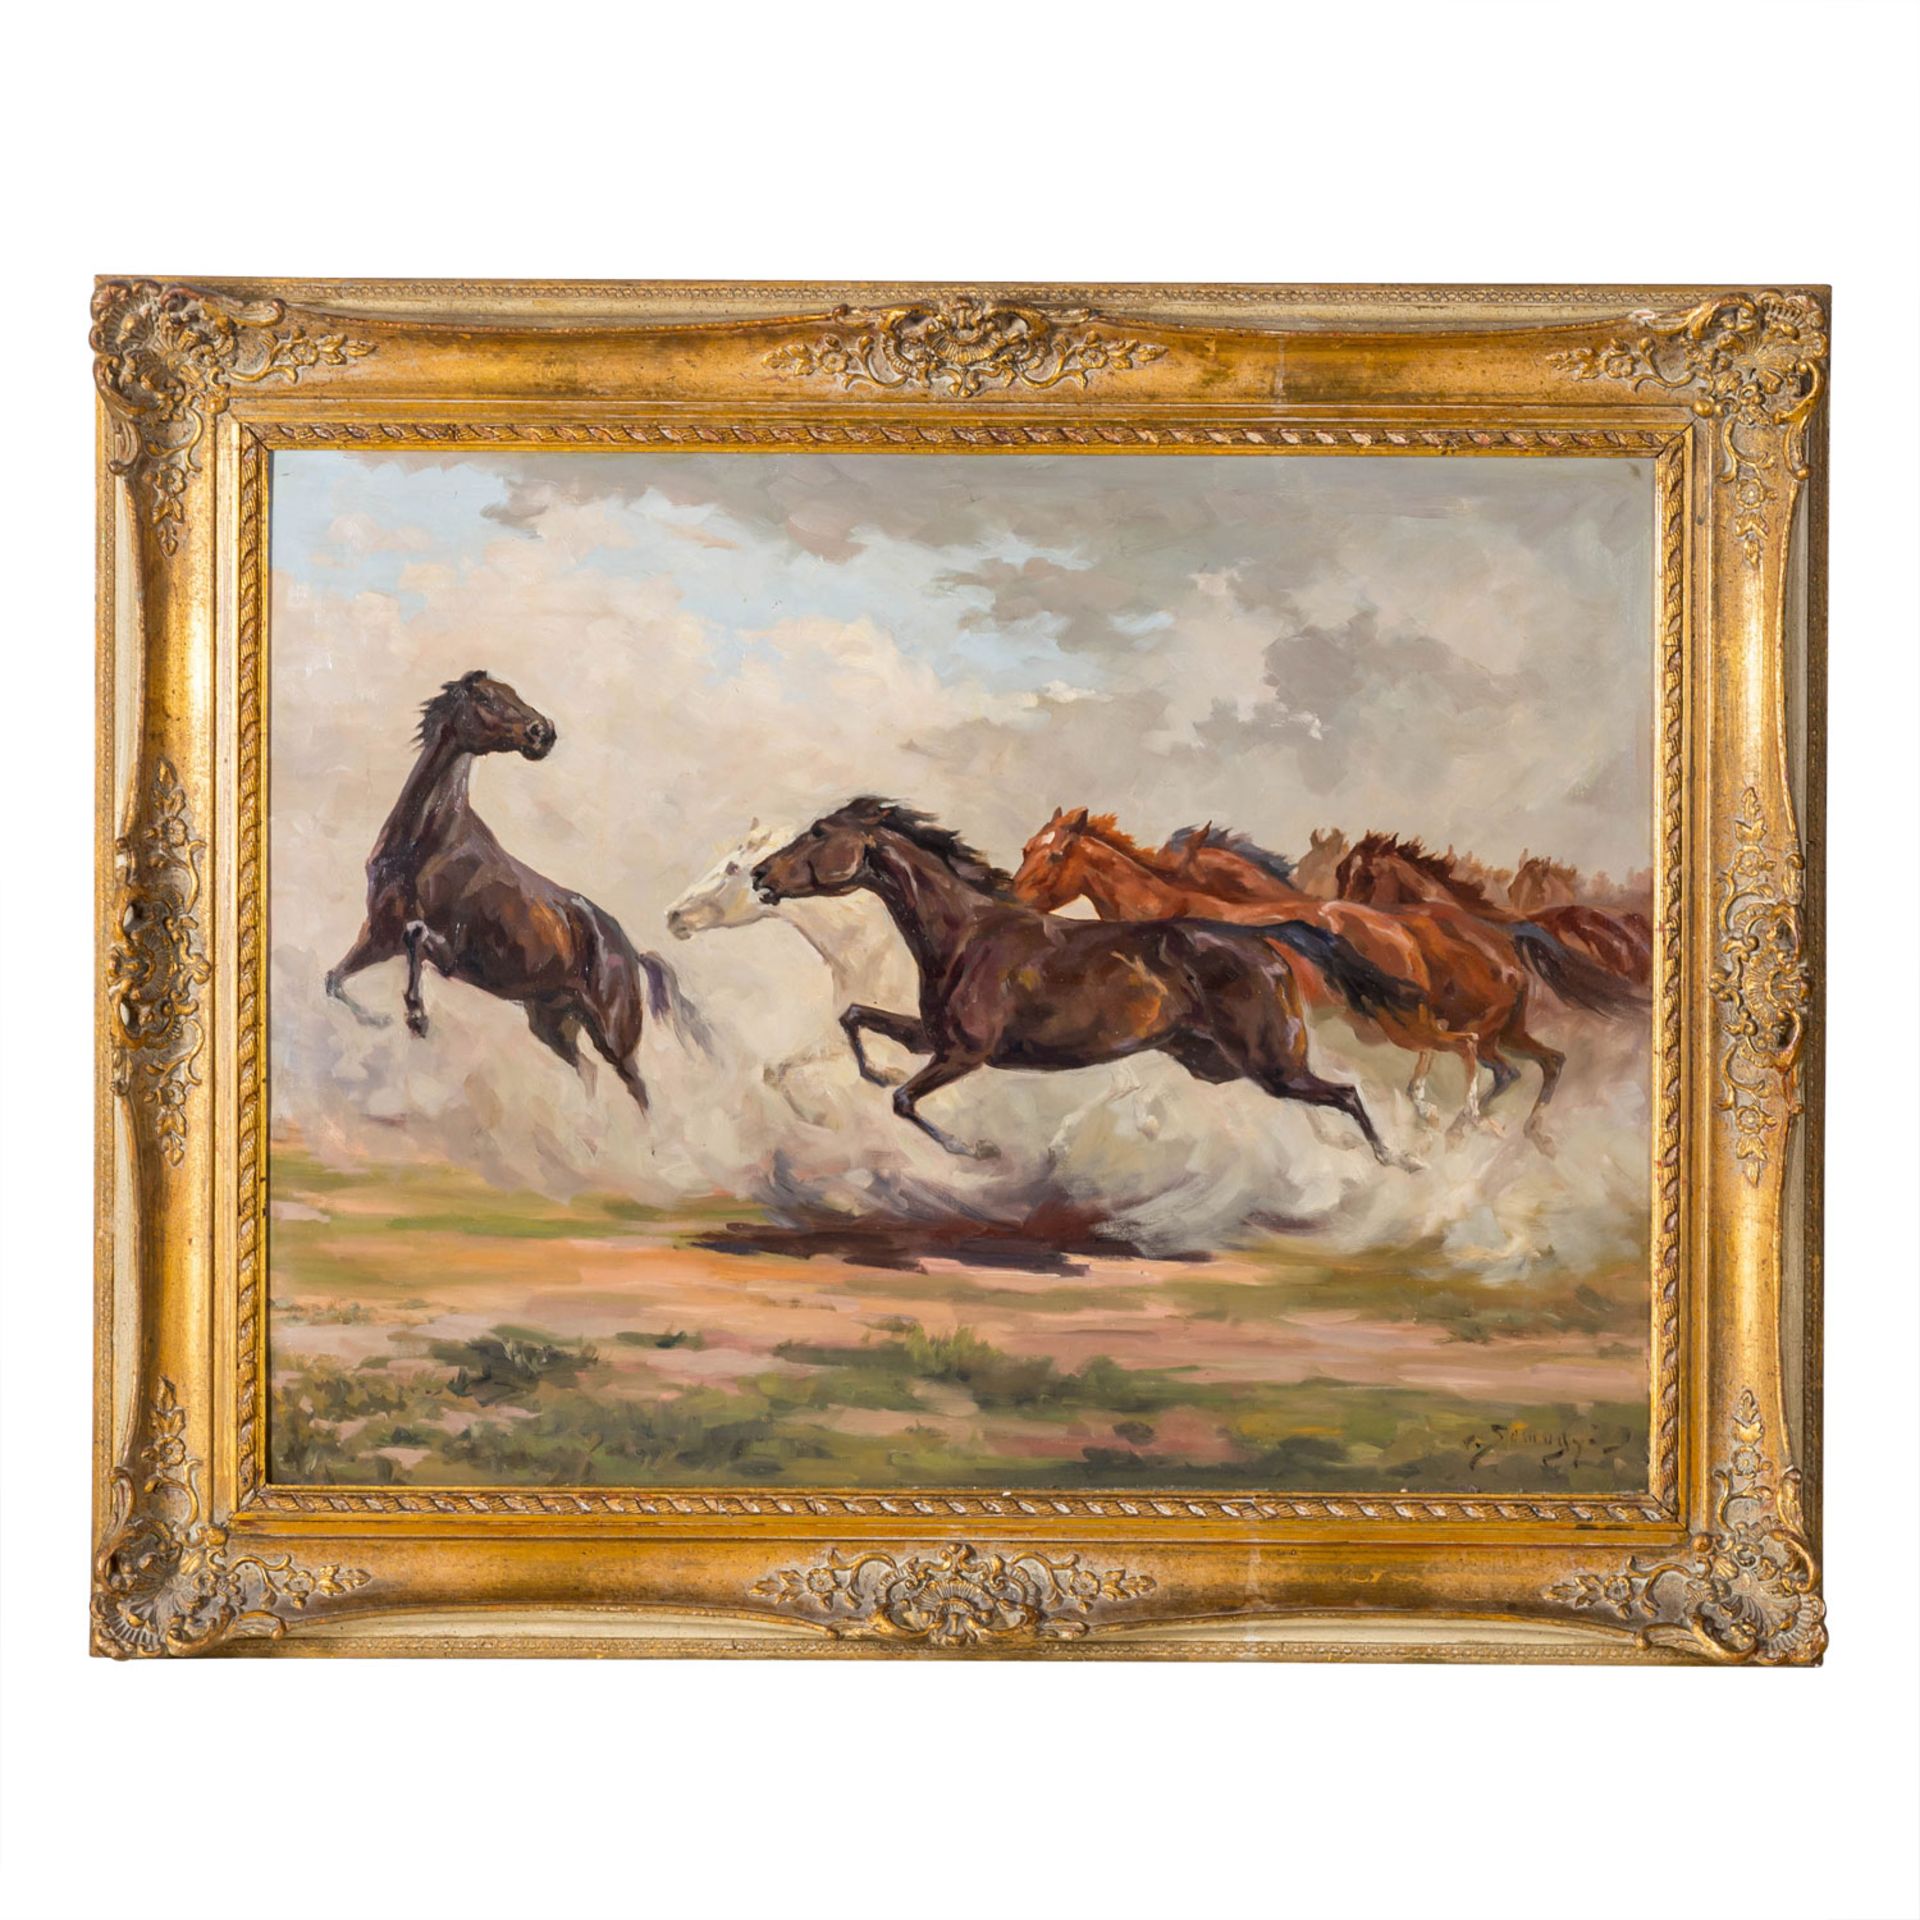 SOMOGYI, ISTVAN von (1897-1971), "Galoppierende Pferde in der Puszta", - Image 2 of 10